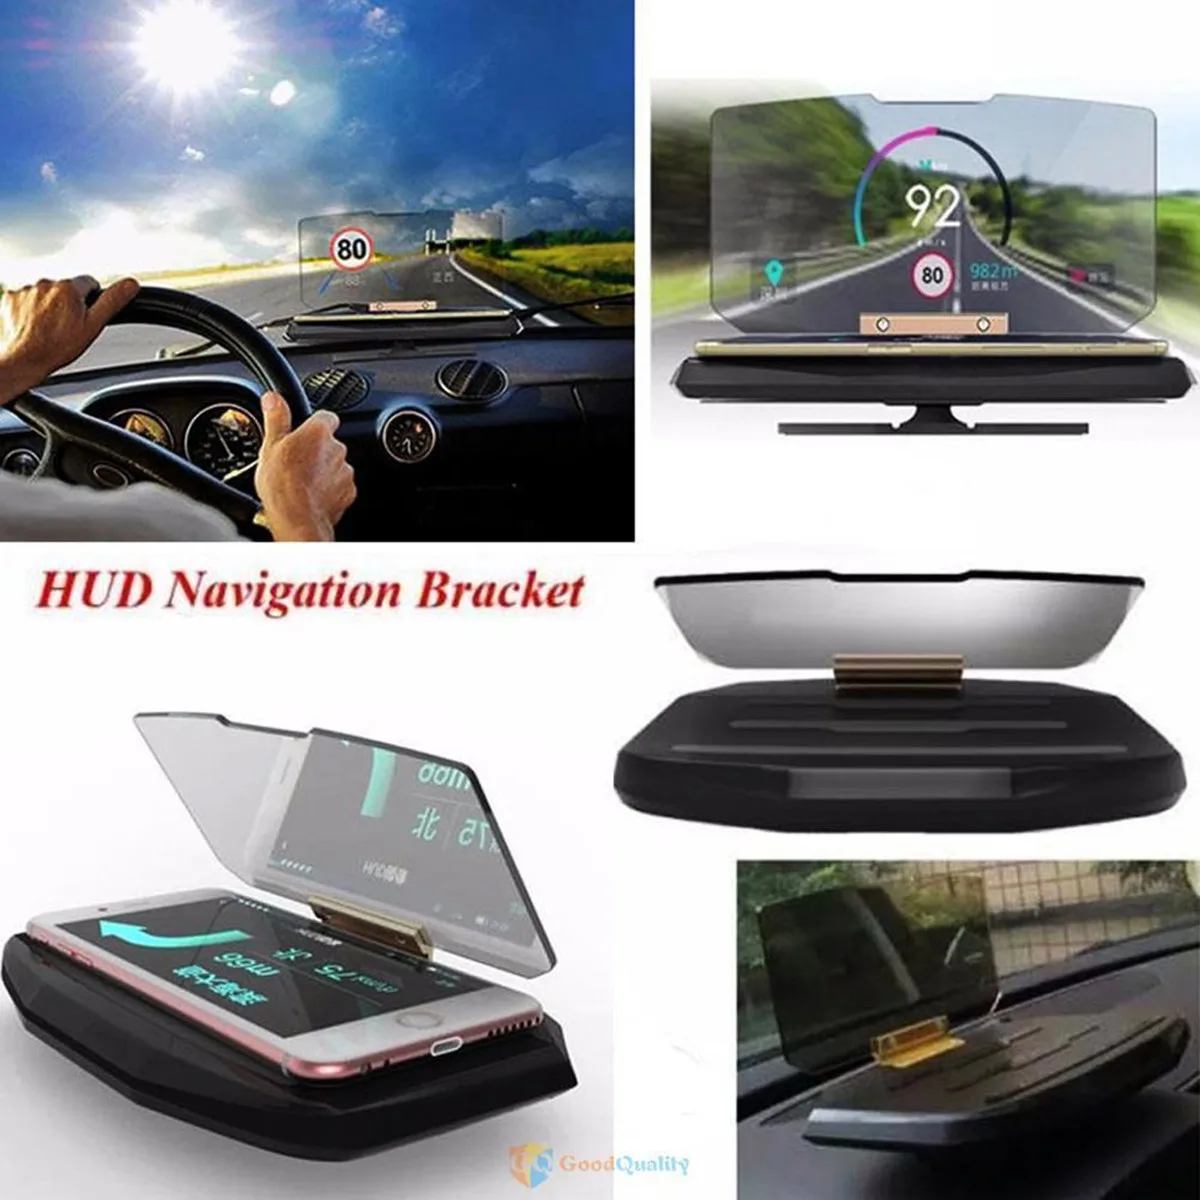 Автомобильный HUD Дисплей Предупреждение скорости, gps навигация, HUD кронштейн, дисплей для смартфона, автомобильная подставка, складной держатель